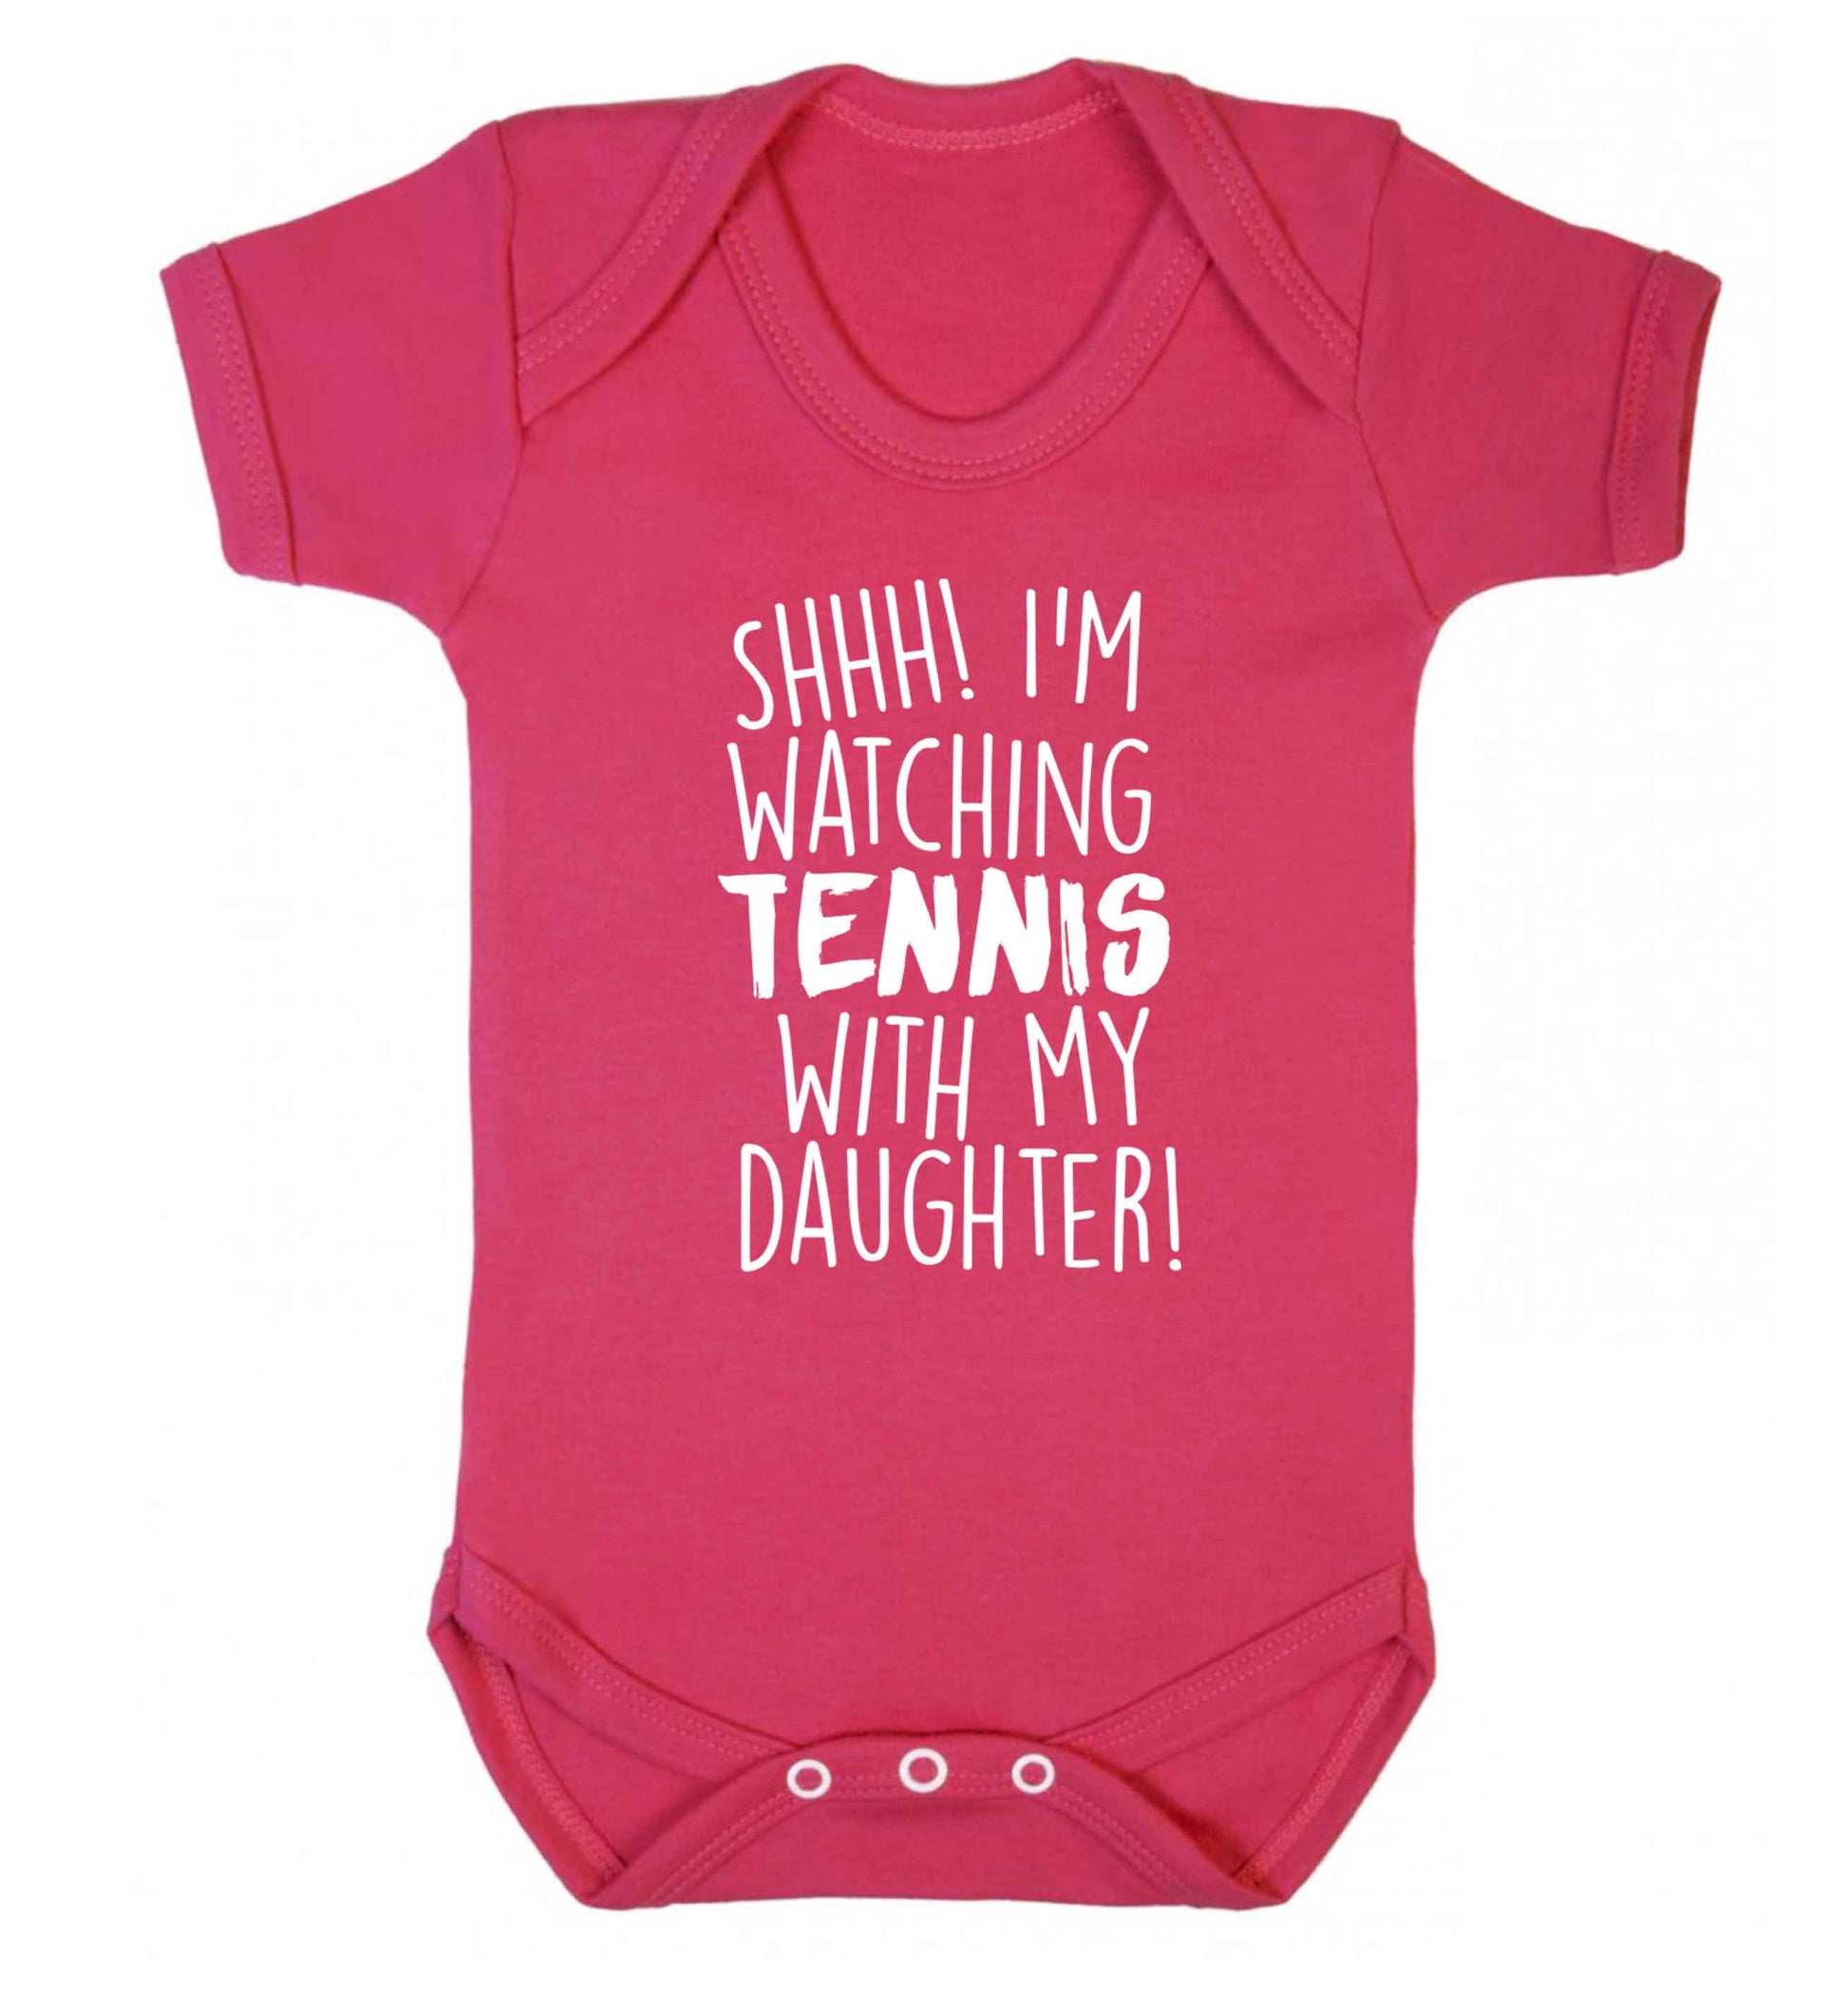 Shh! I'm watching tennis with my daughter! Baby Vest dark pink 18-24 months